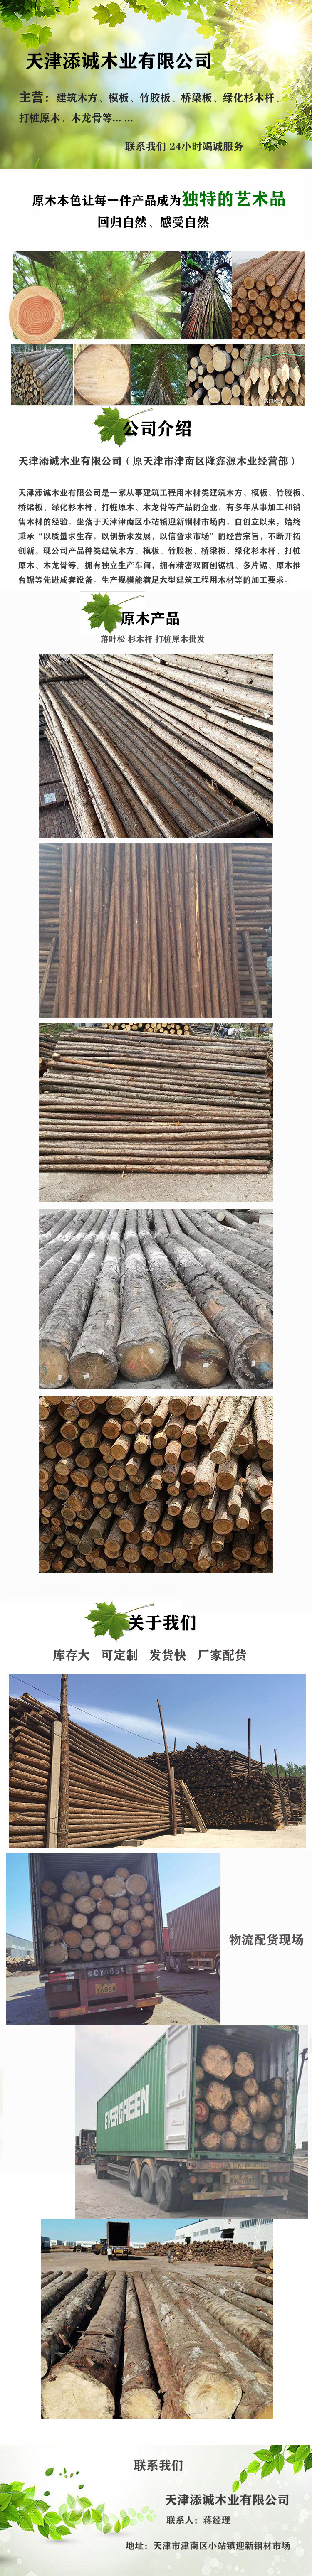 天津楊木桿木樁批發 楊木綠化支撐桿價格 添誠木業綠化支撐桿